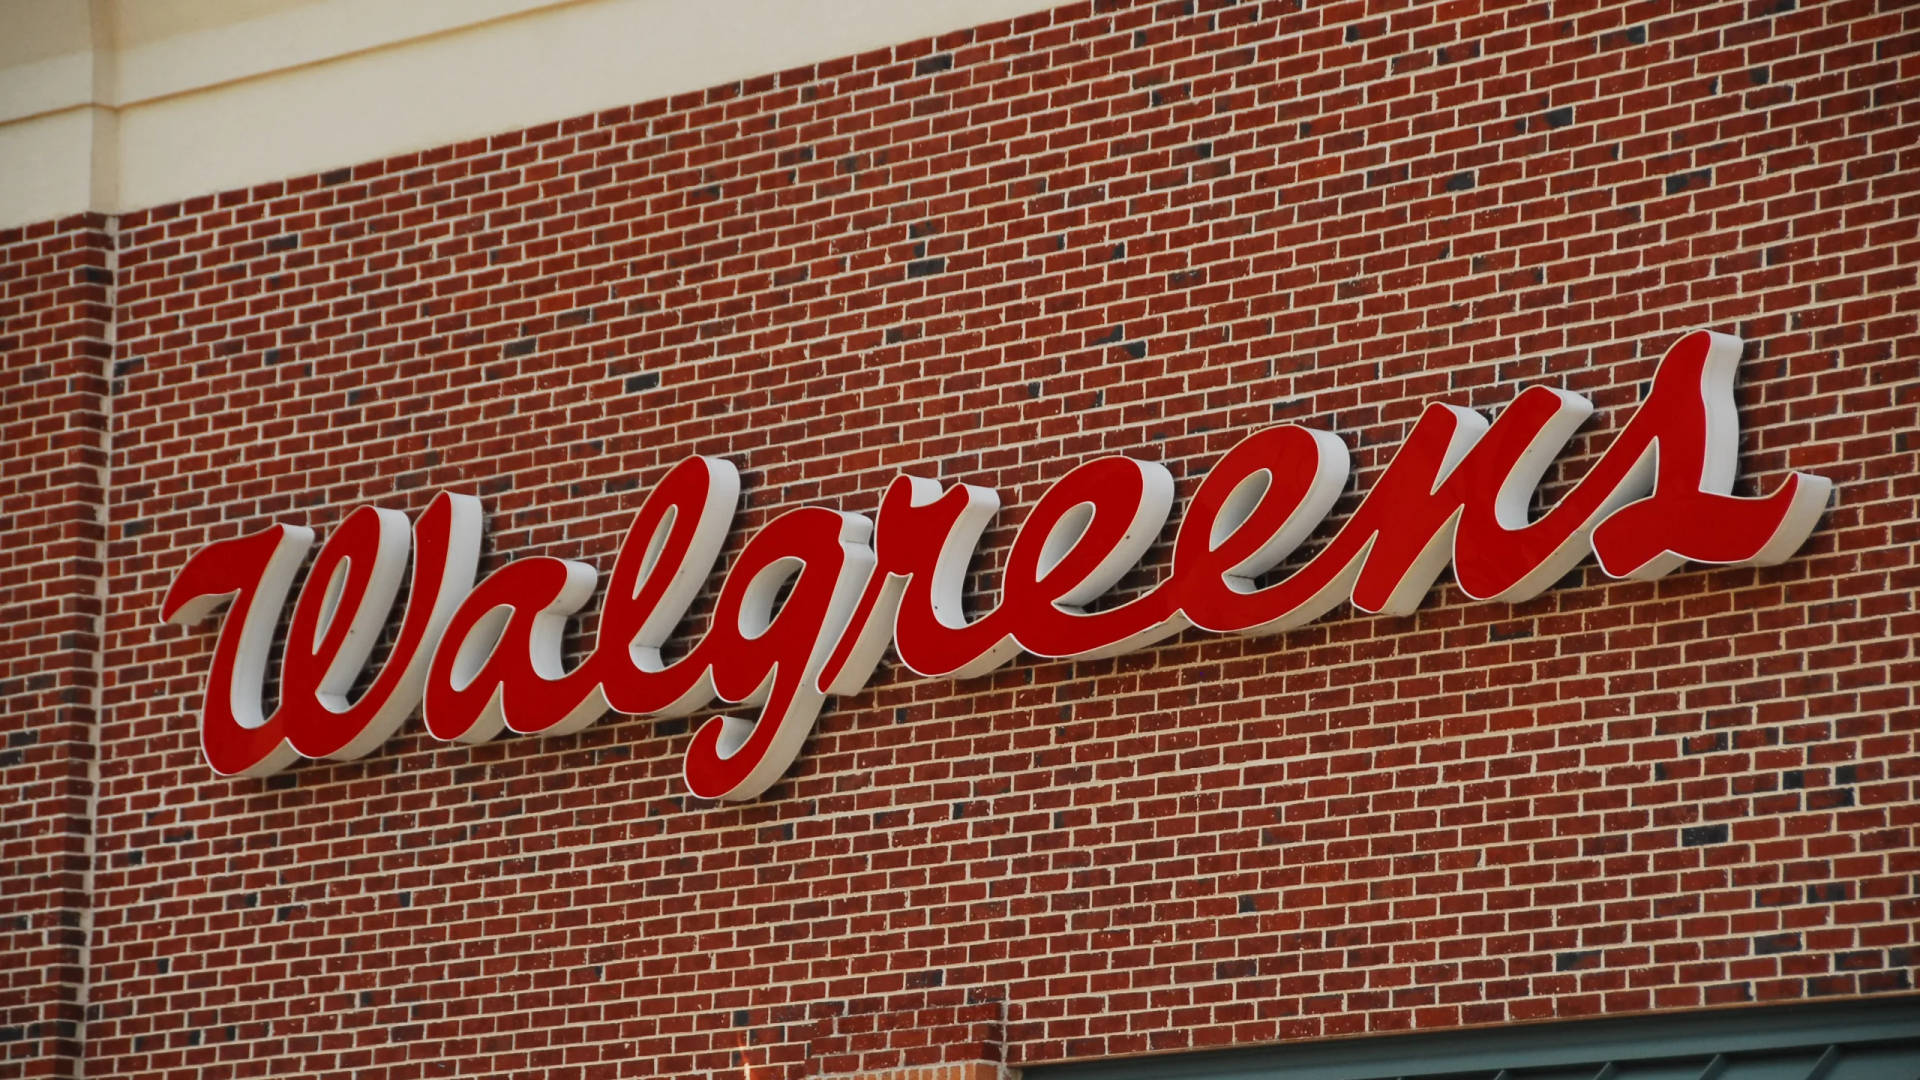 Walgreens Signage Brick Wall Wallpaper